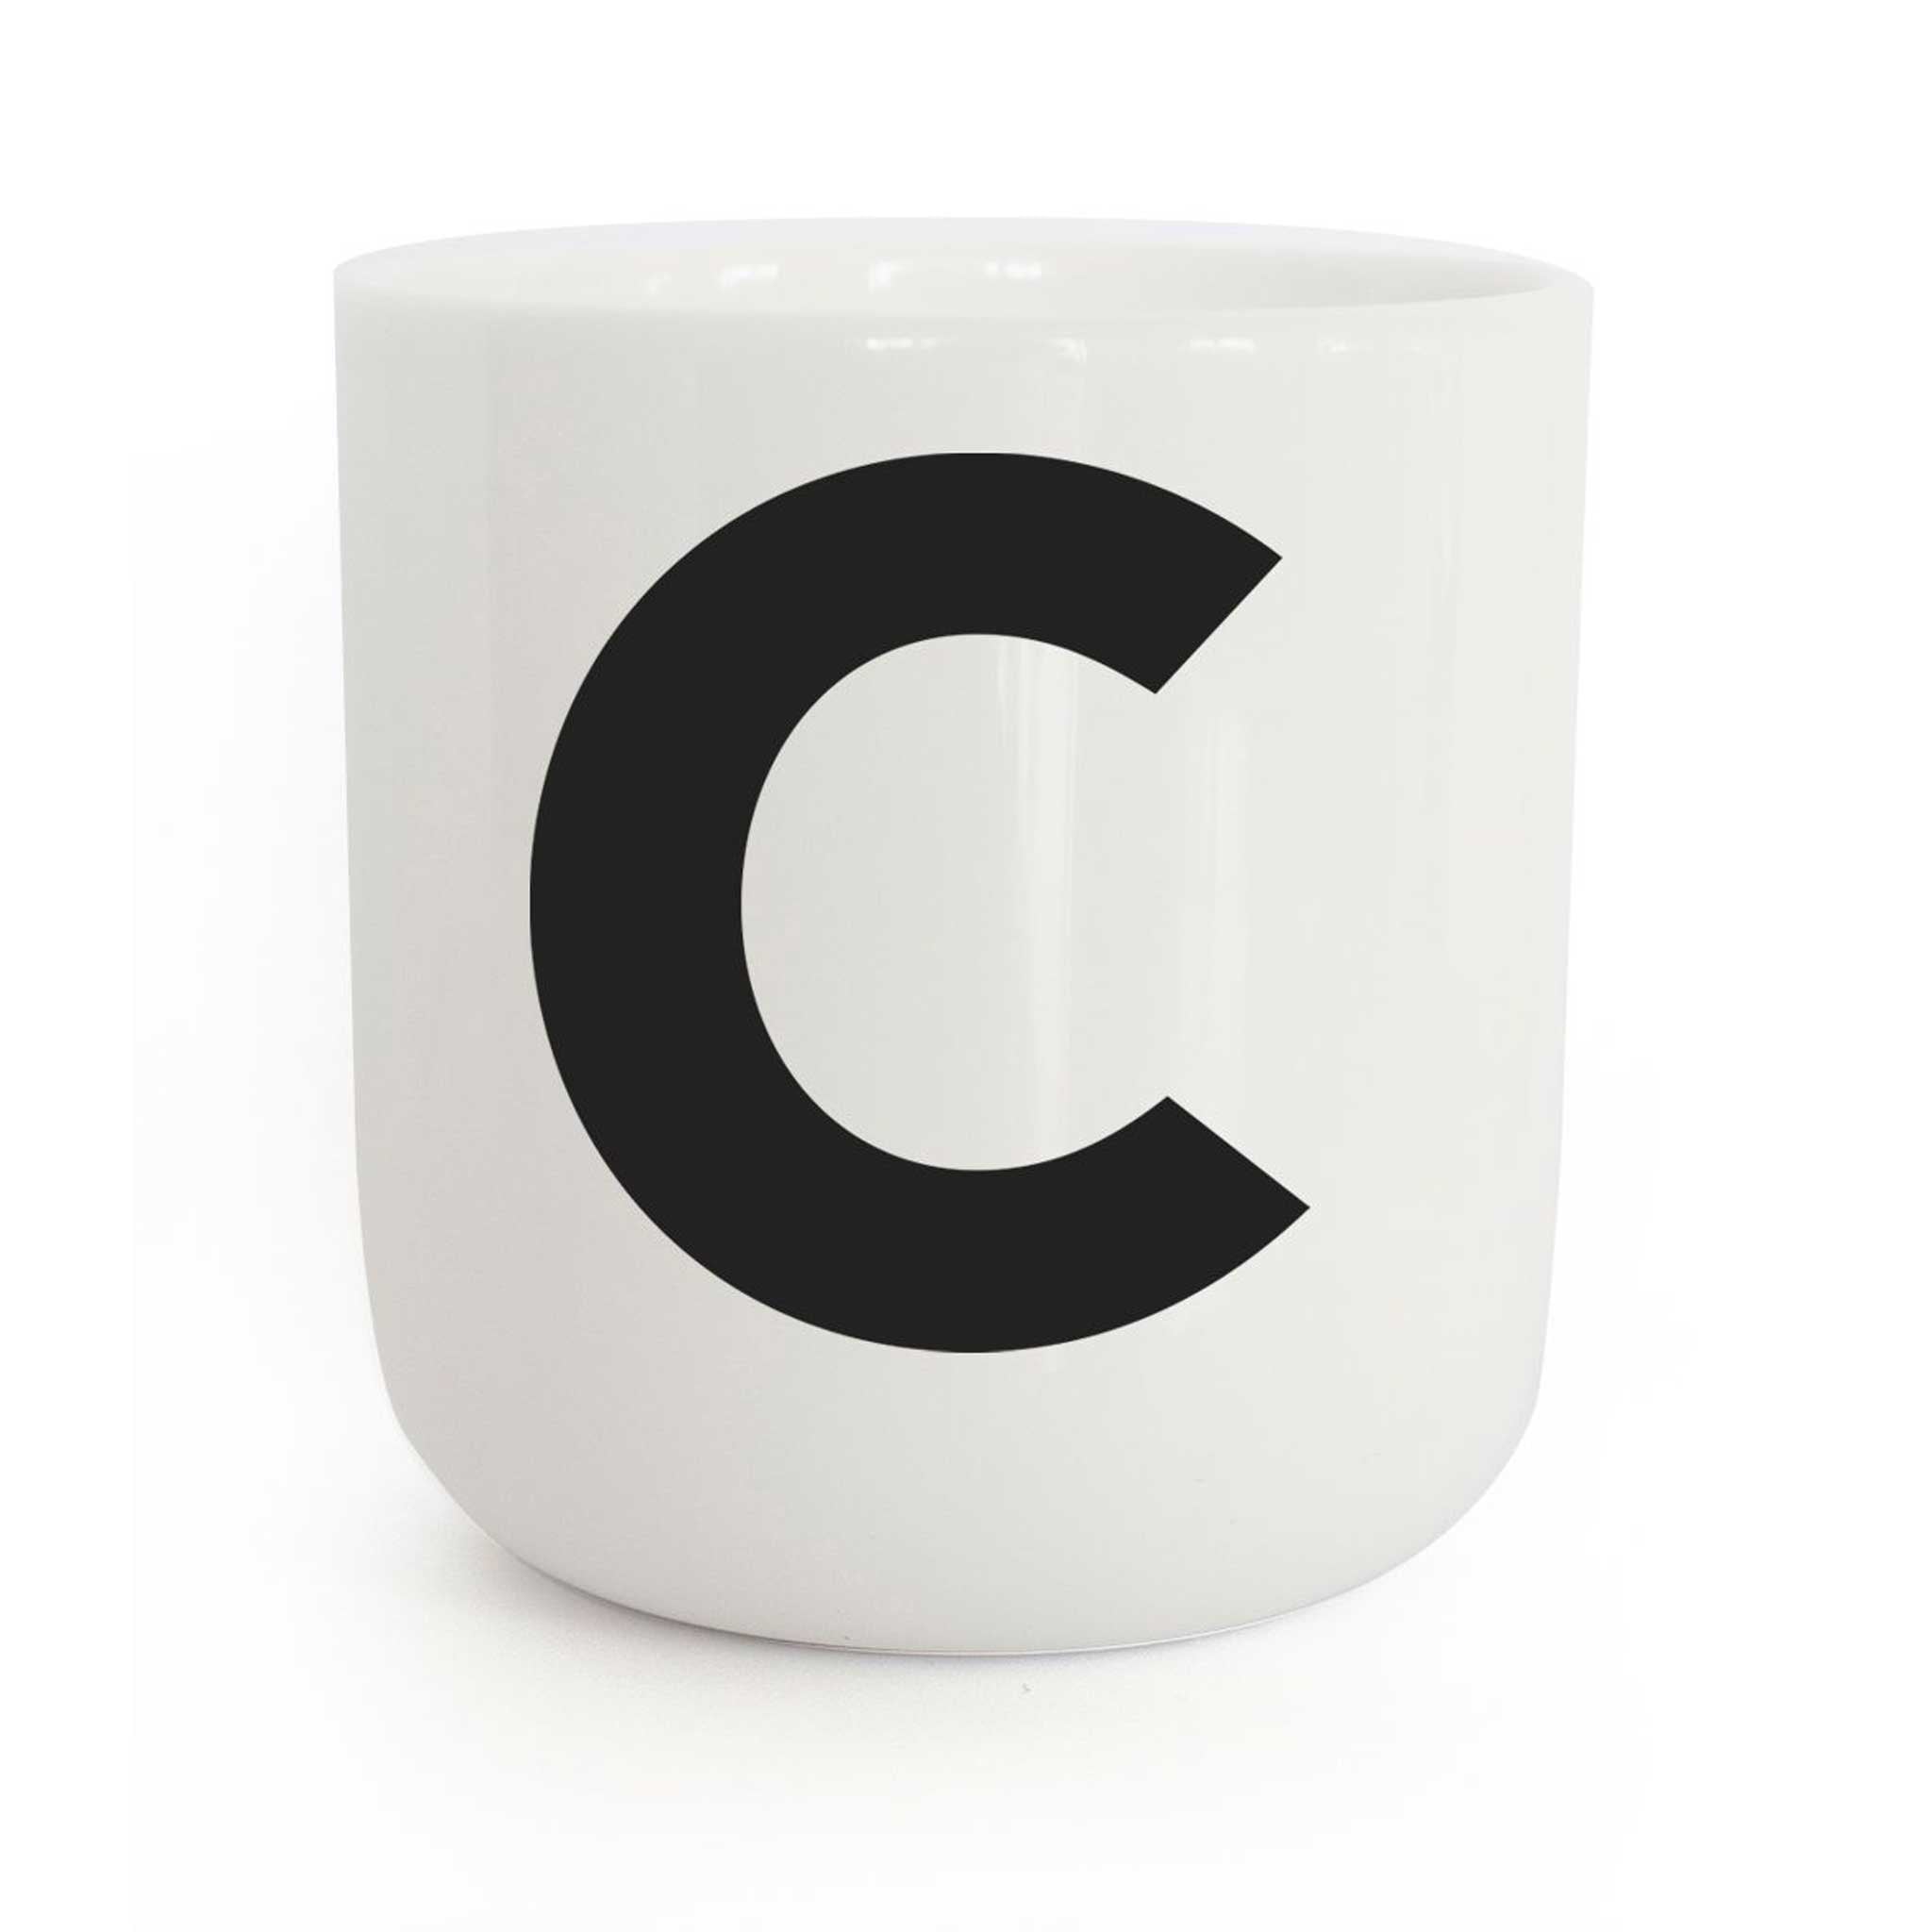 C | weisser Kaffee- & Tee-BECHER mit schwarzer Typo | Letters & Glyphs Serie | PLTY